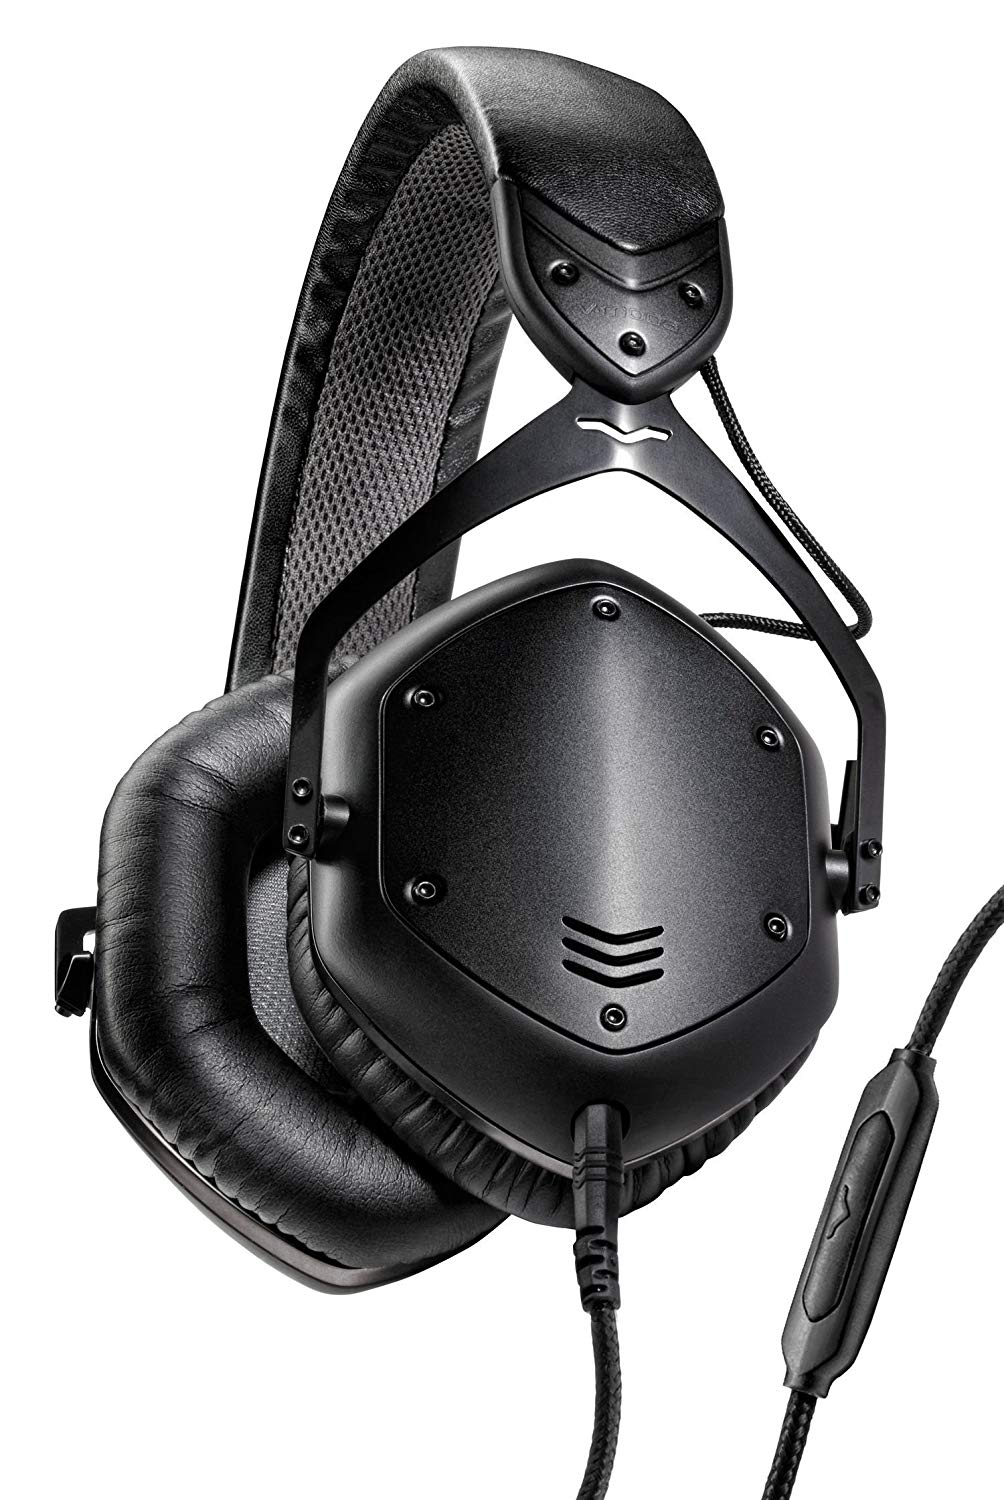 V-MODA Fone de ouvido de metal com isolamento de ruído crossfade LP2 Vocal Edição limitada sobre a orelha (preto fosco)